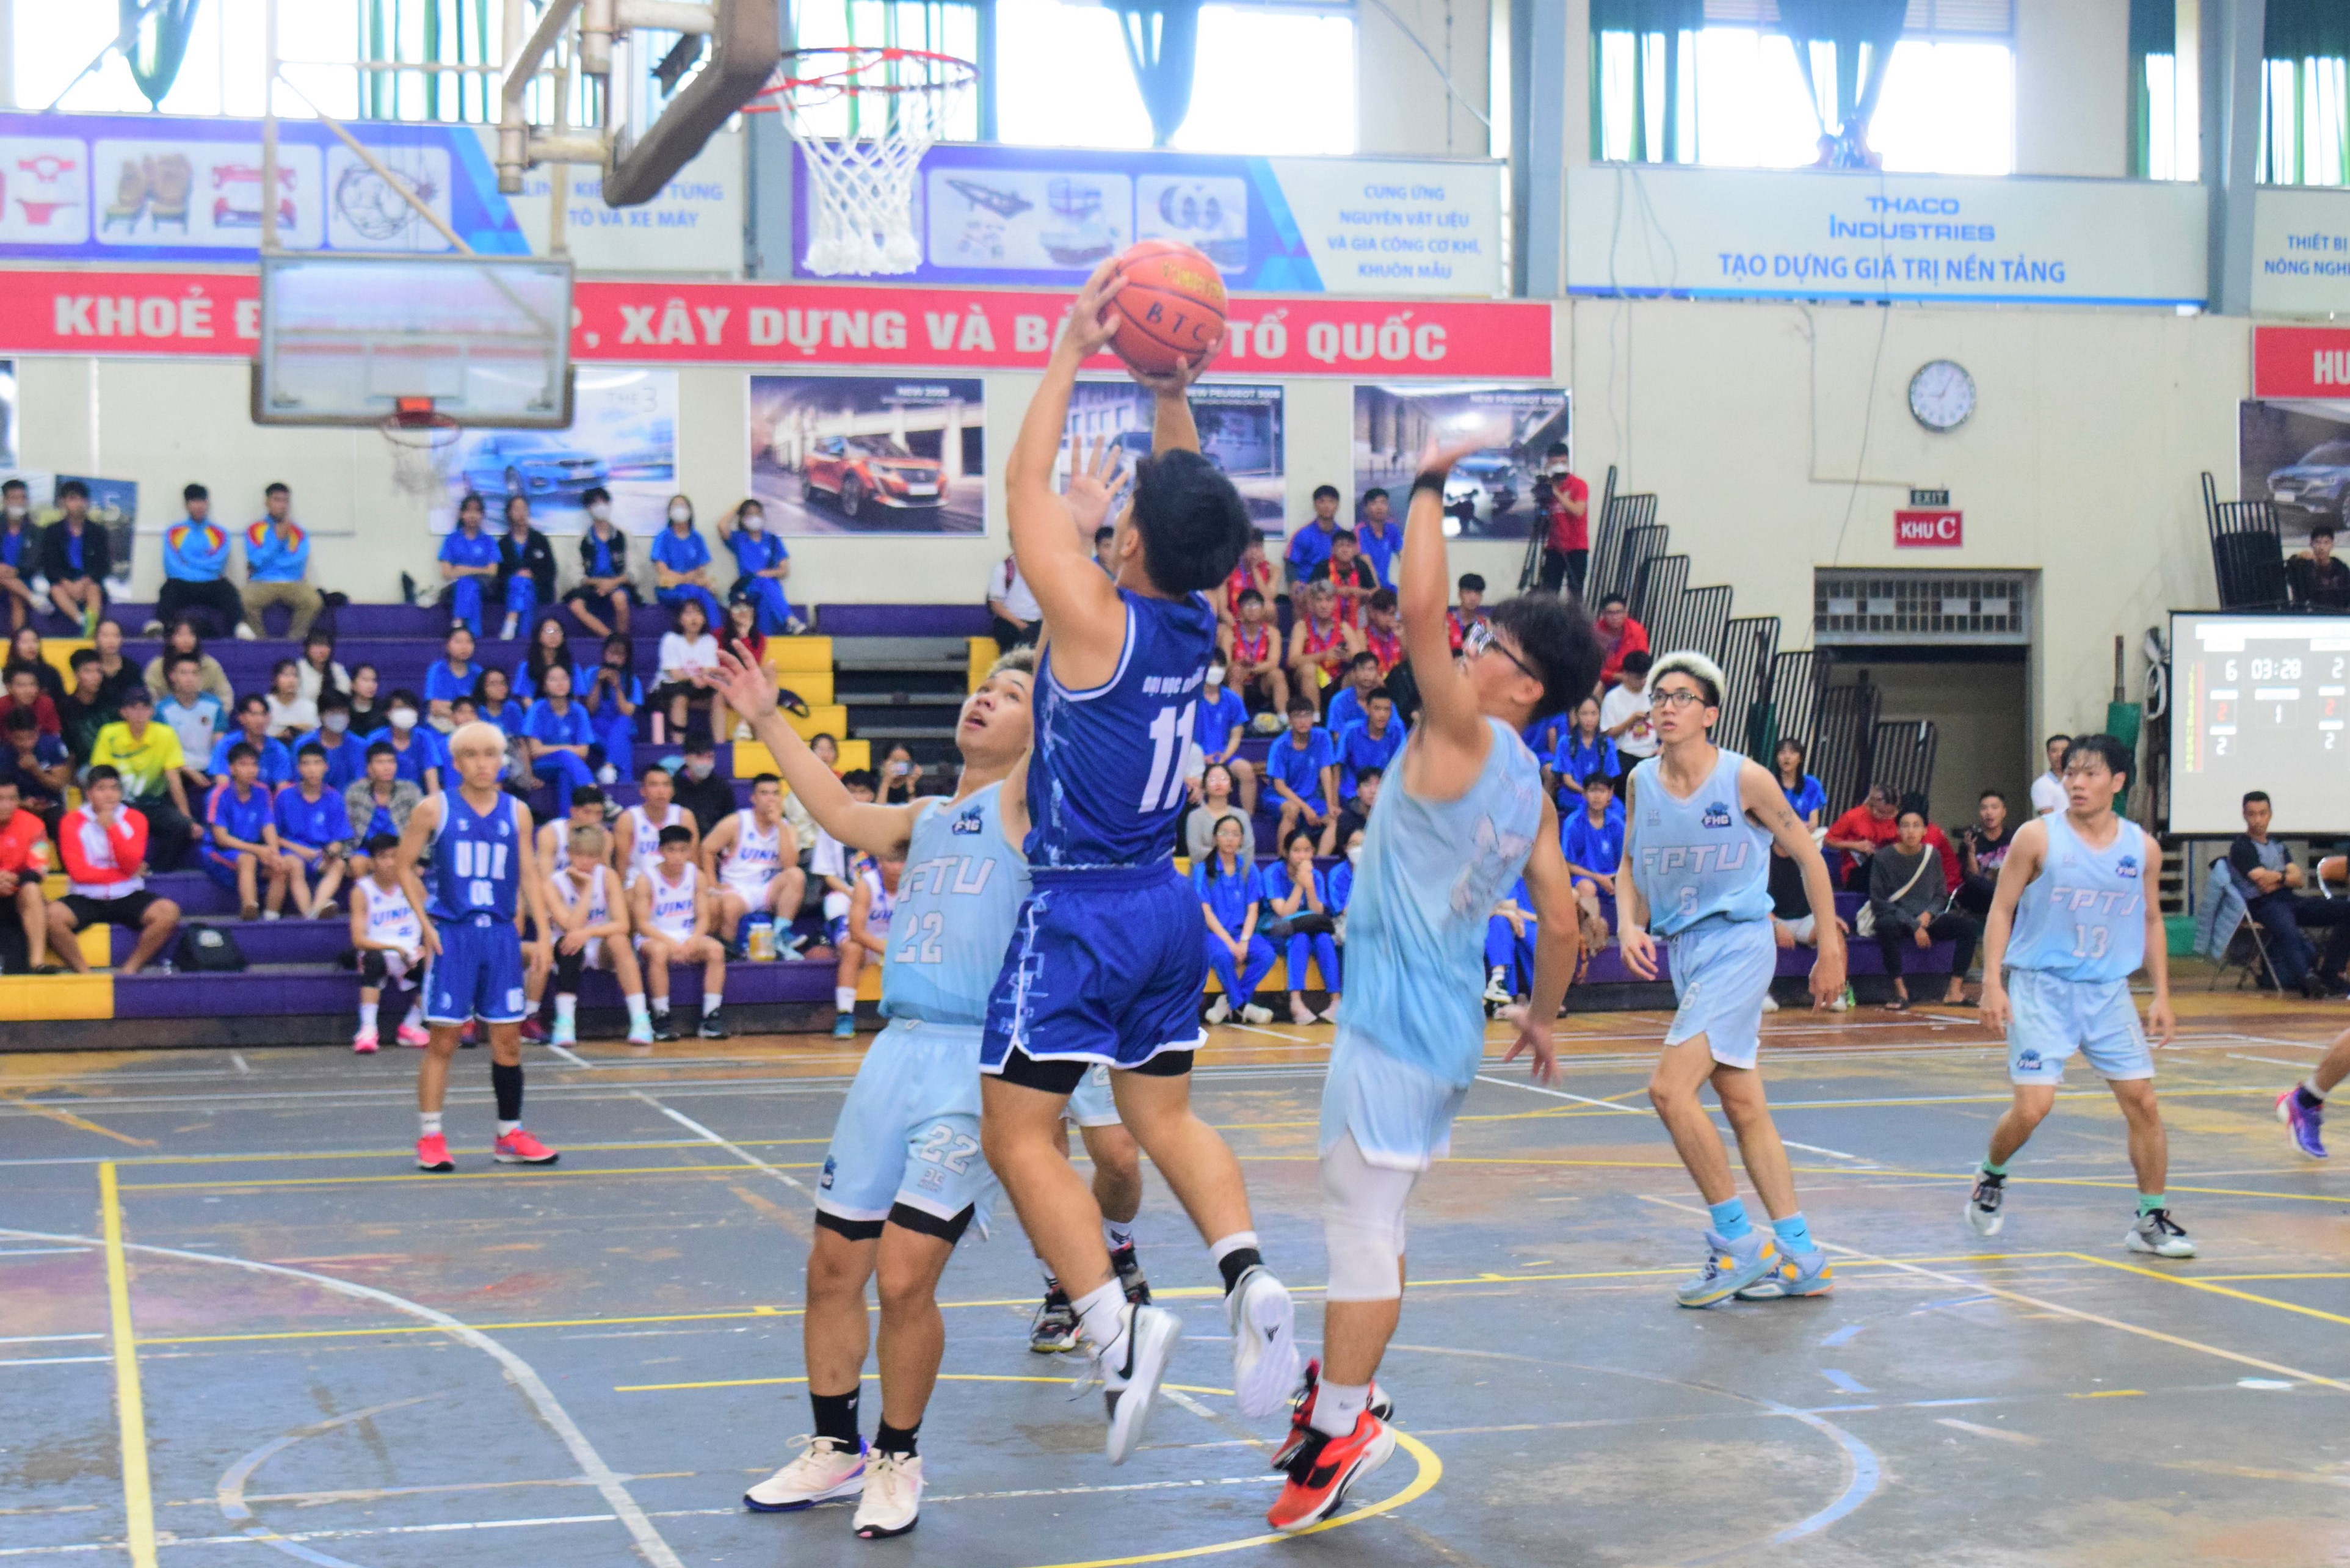 Đội bóng rổ nam Đại học Đà Nẵng (áo xanh) xuất sắc vượt qua các đối thủ, vô địch giải bóng rổ sinh viên toàn quốc năm 2023 khu vực miền Trung.Ảnh: P.N